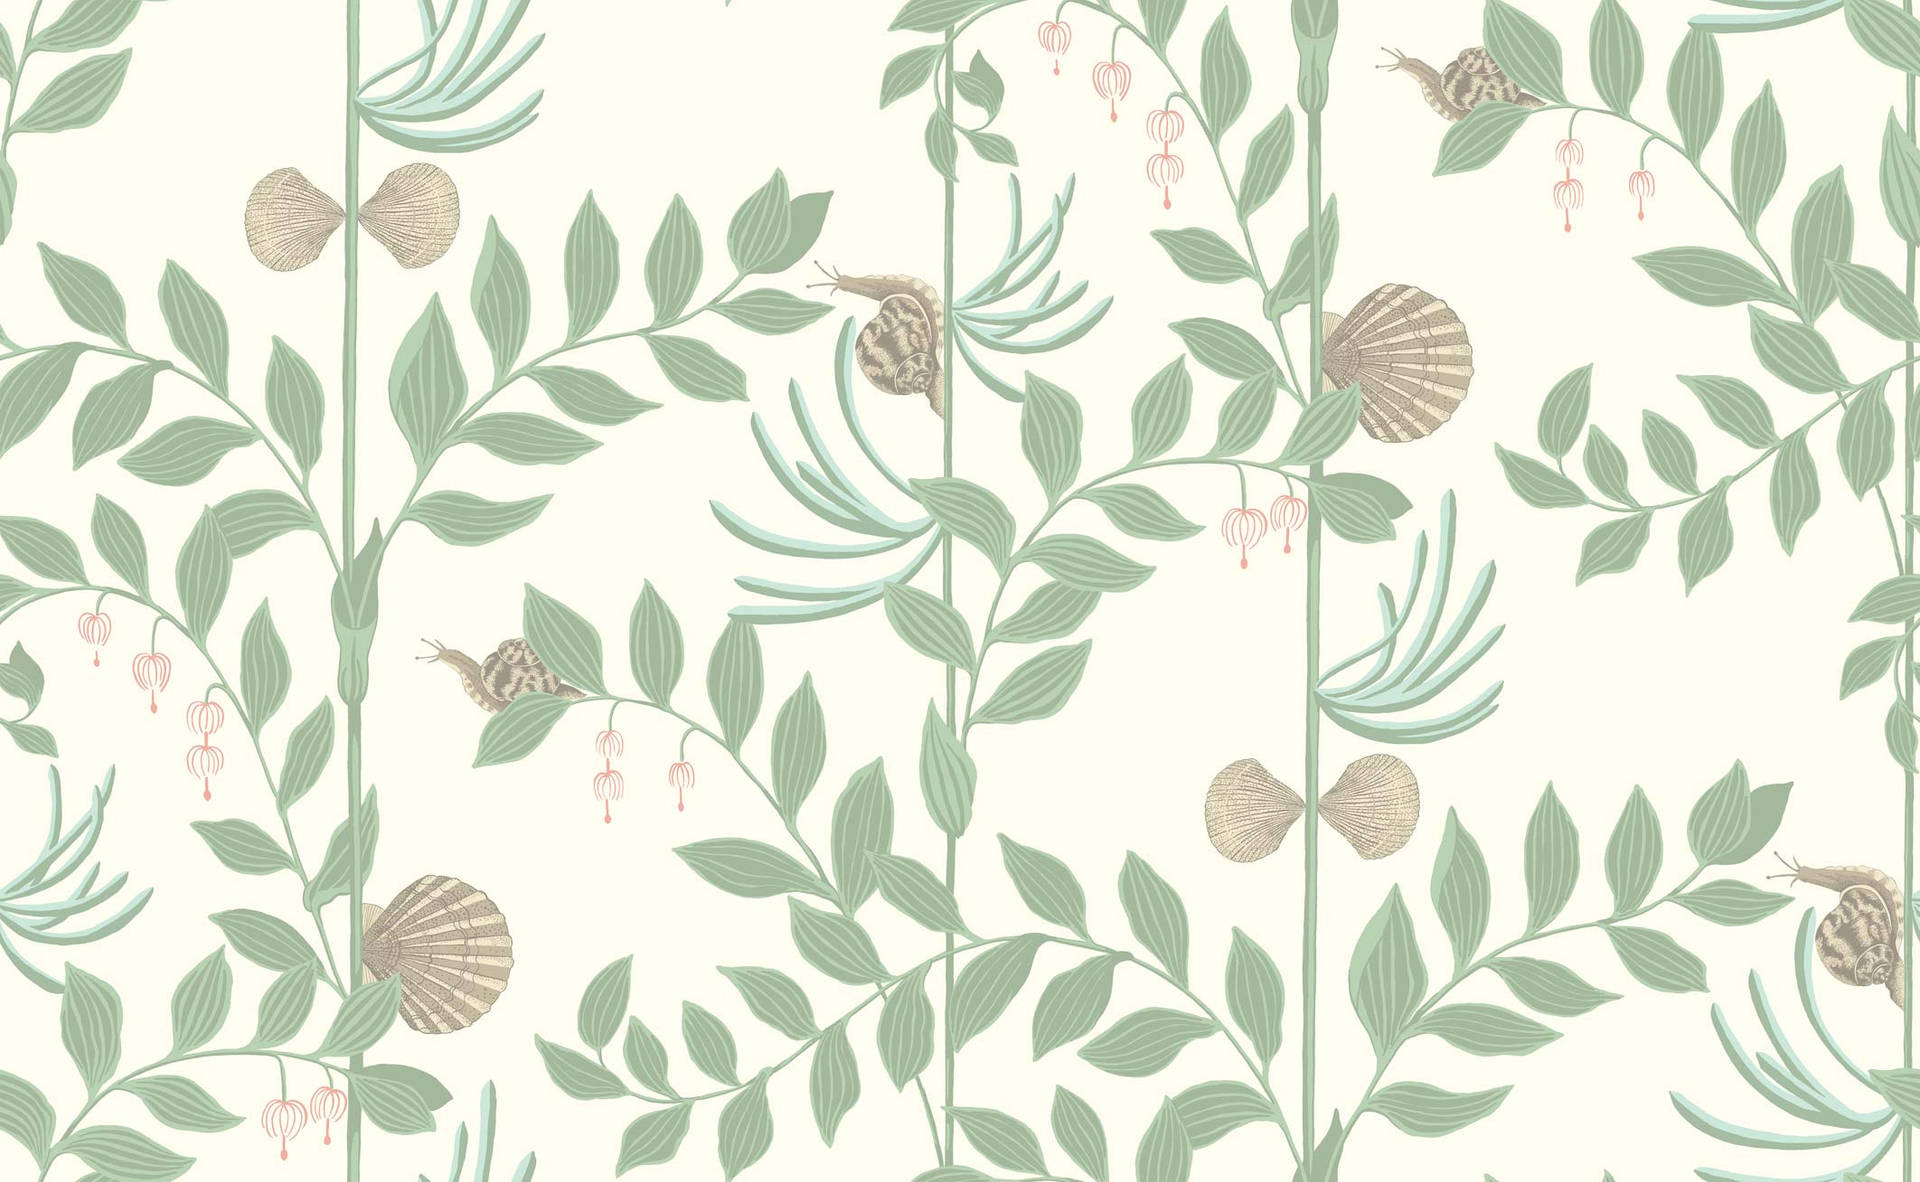 Rosasnäckor I Salviagrön För Skrivbordsbakgrund. Wallpaper